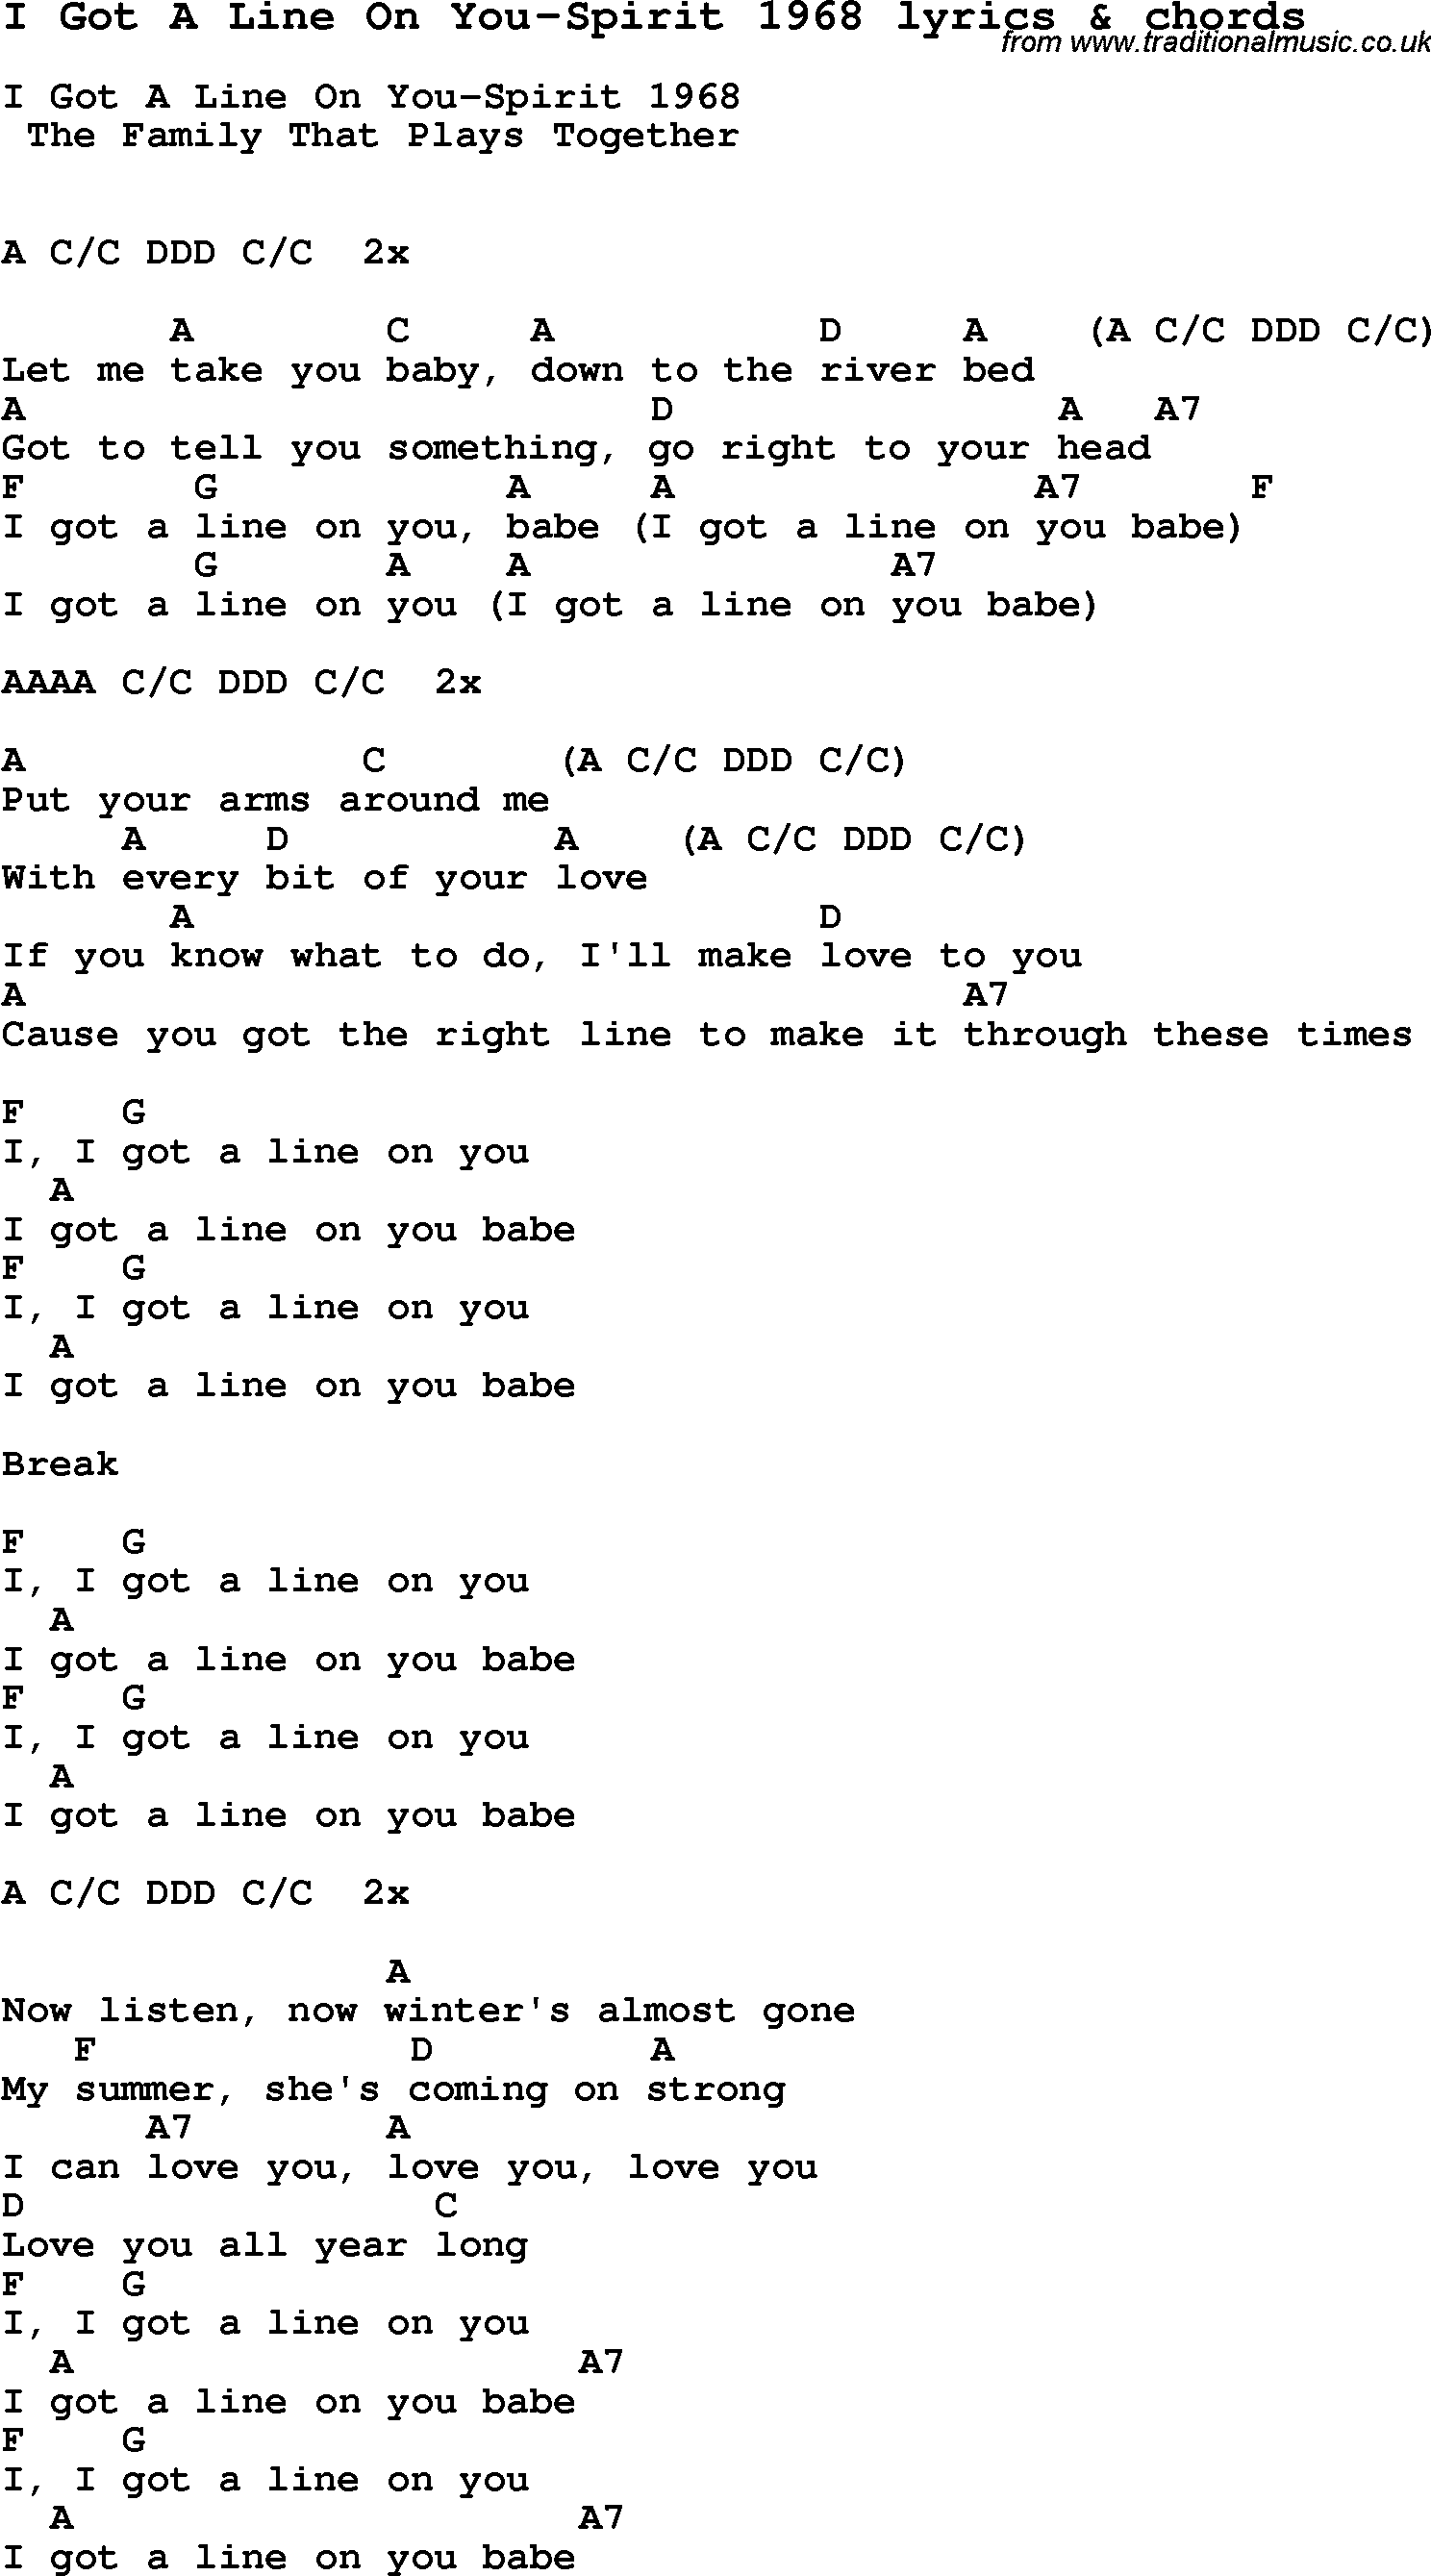 Love Song Lyrics for: I Got A Line On You-Spirit 1968 with chords for Ukulele, Guitar Banjo etc.